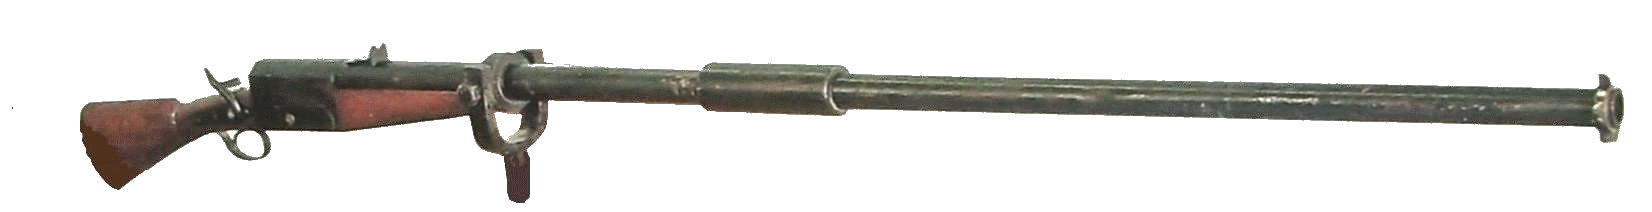 Уточница, хранящаяся в музее Ижмаша (калибр 32 мм, длина общая 2650 мм, длина ствола 2100 мм, масса, кг 38)